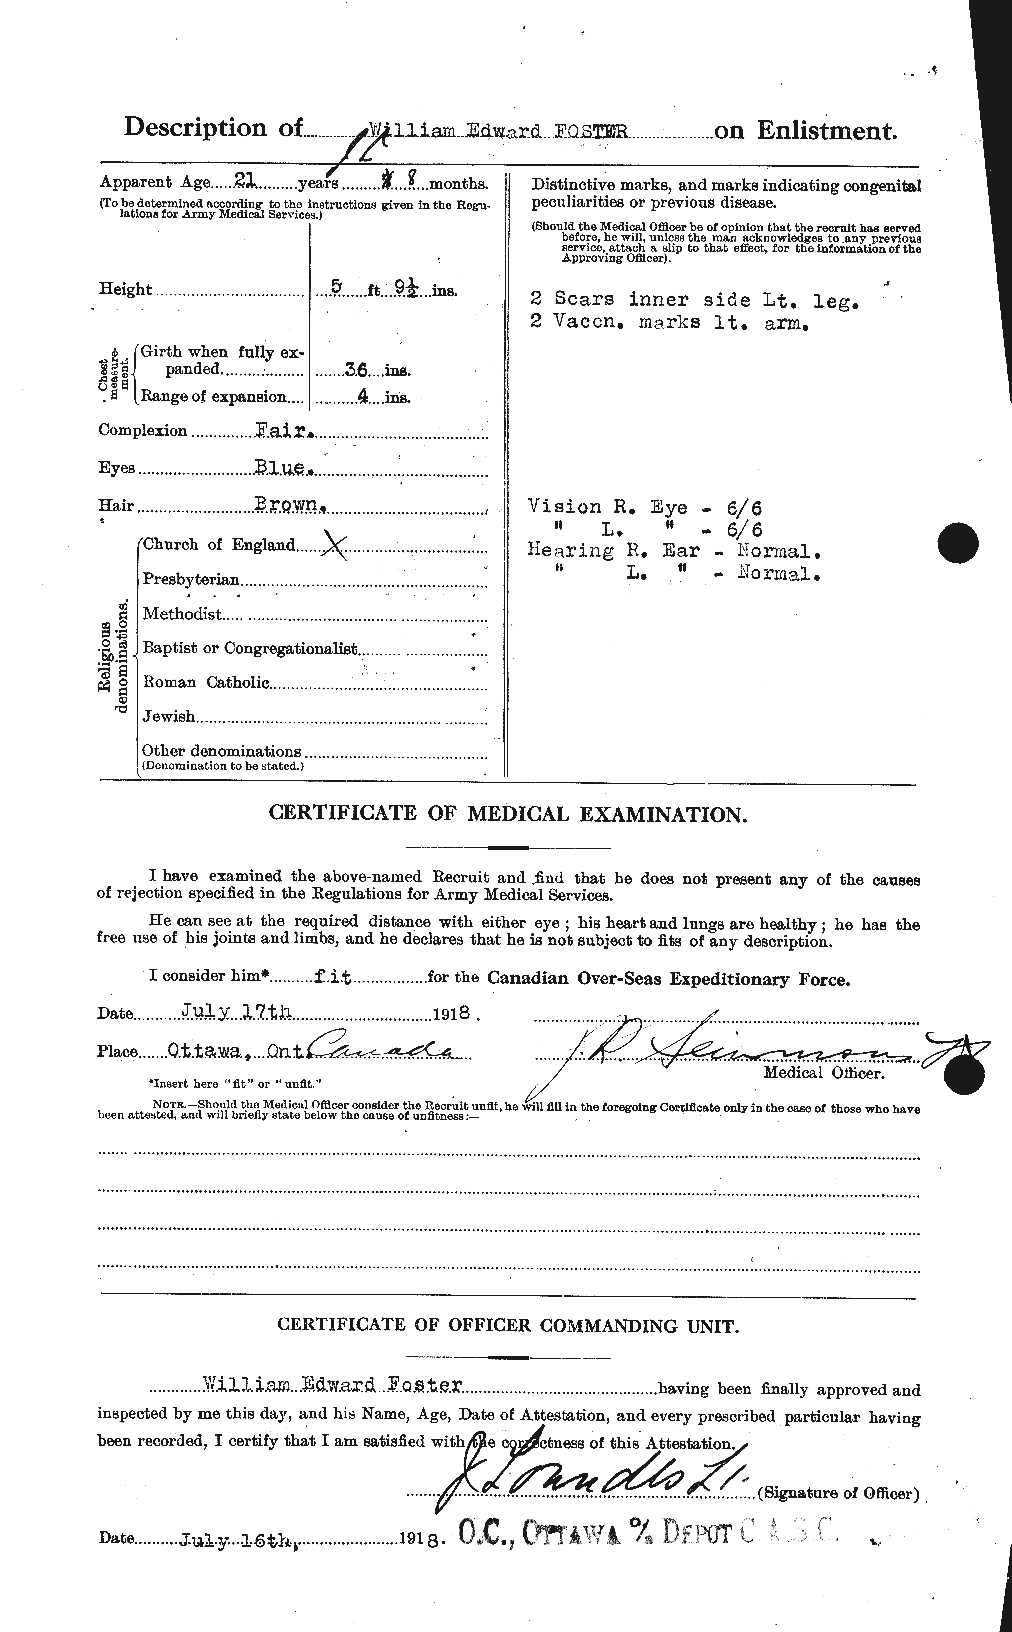 Dossiers du Personnel de la Première Guerre mondiale - CEC 328740b